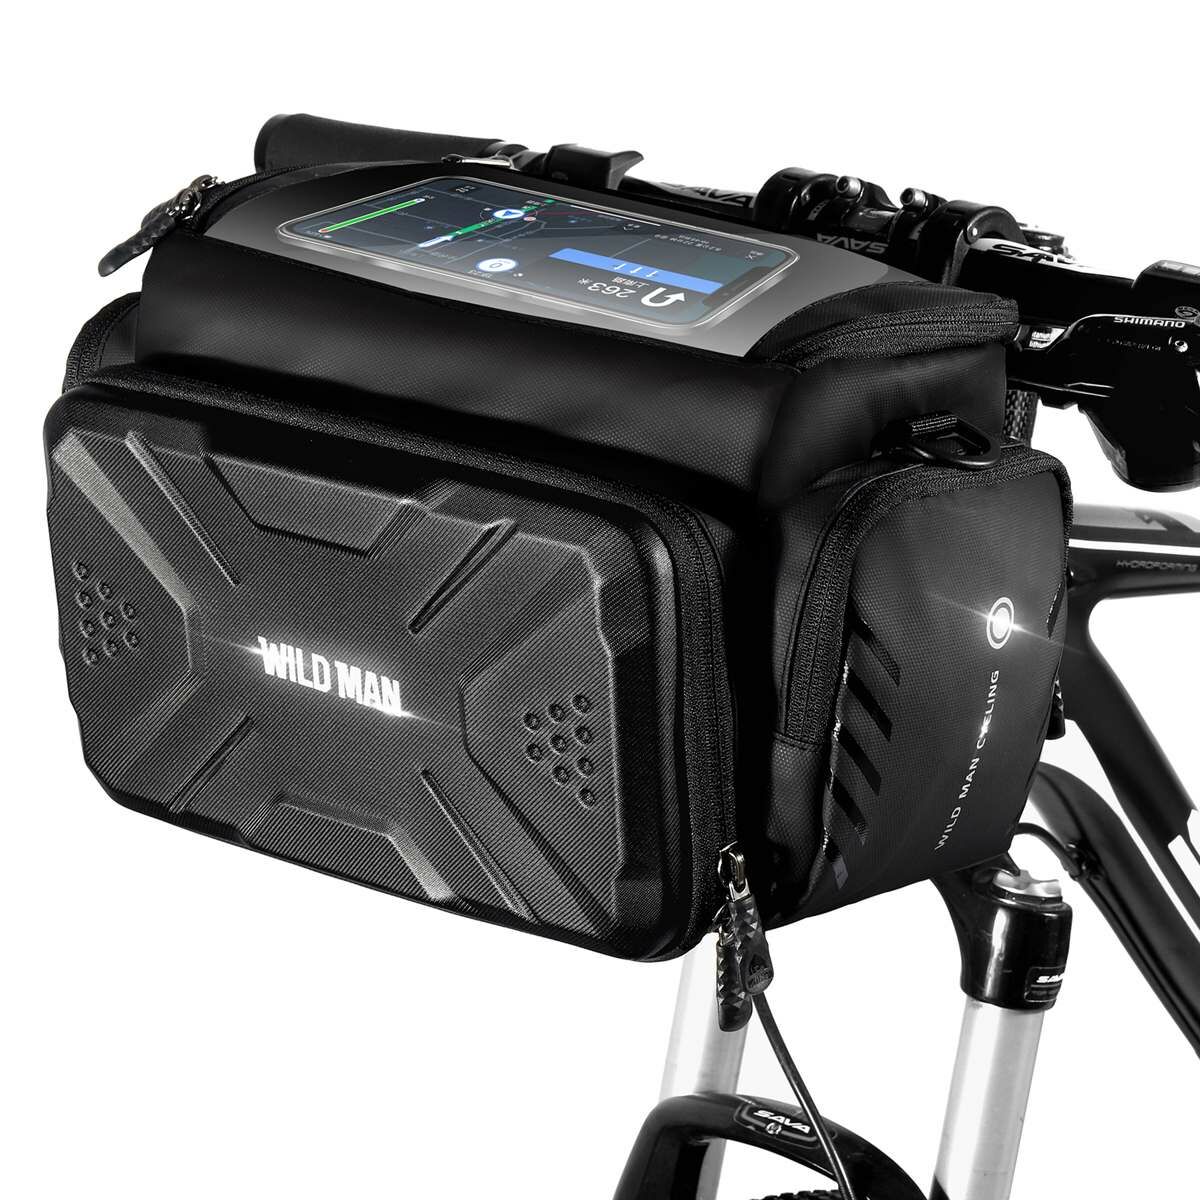 Kép 2/5 - WILDMAN kerékpár táska GS6, 4L, több funkciós, vízálló, kormányra szerelhető, érintő kijelző, tárolótáska, fekete